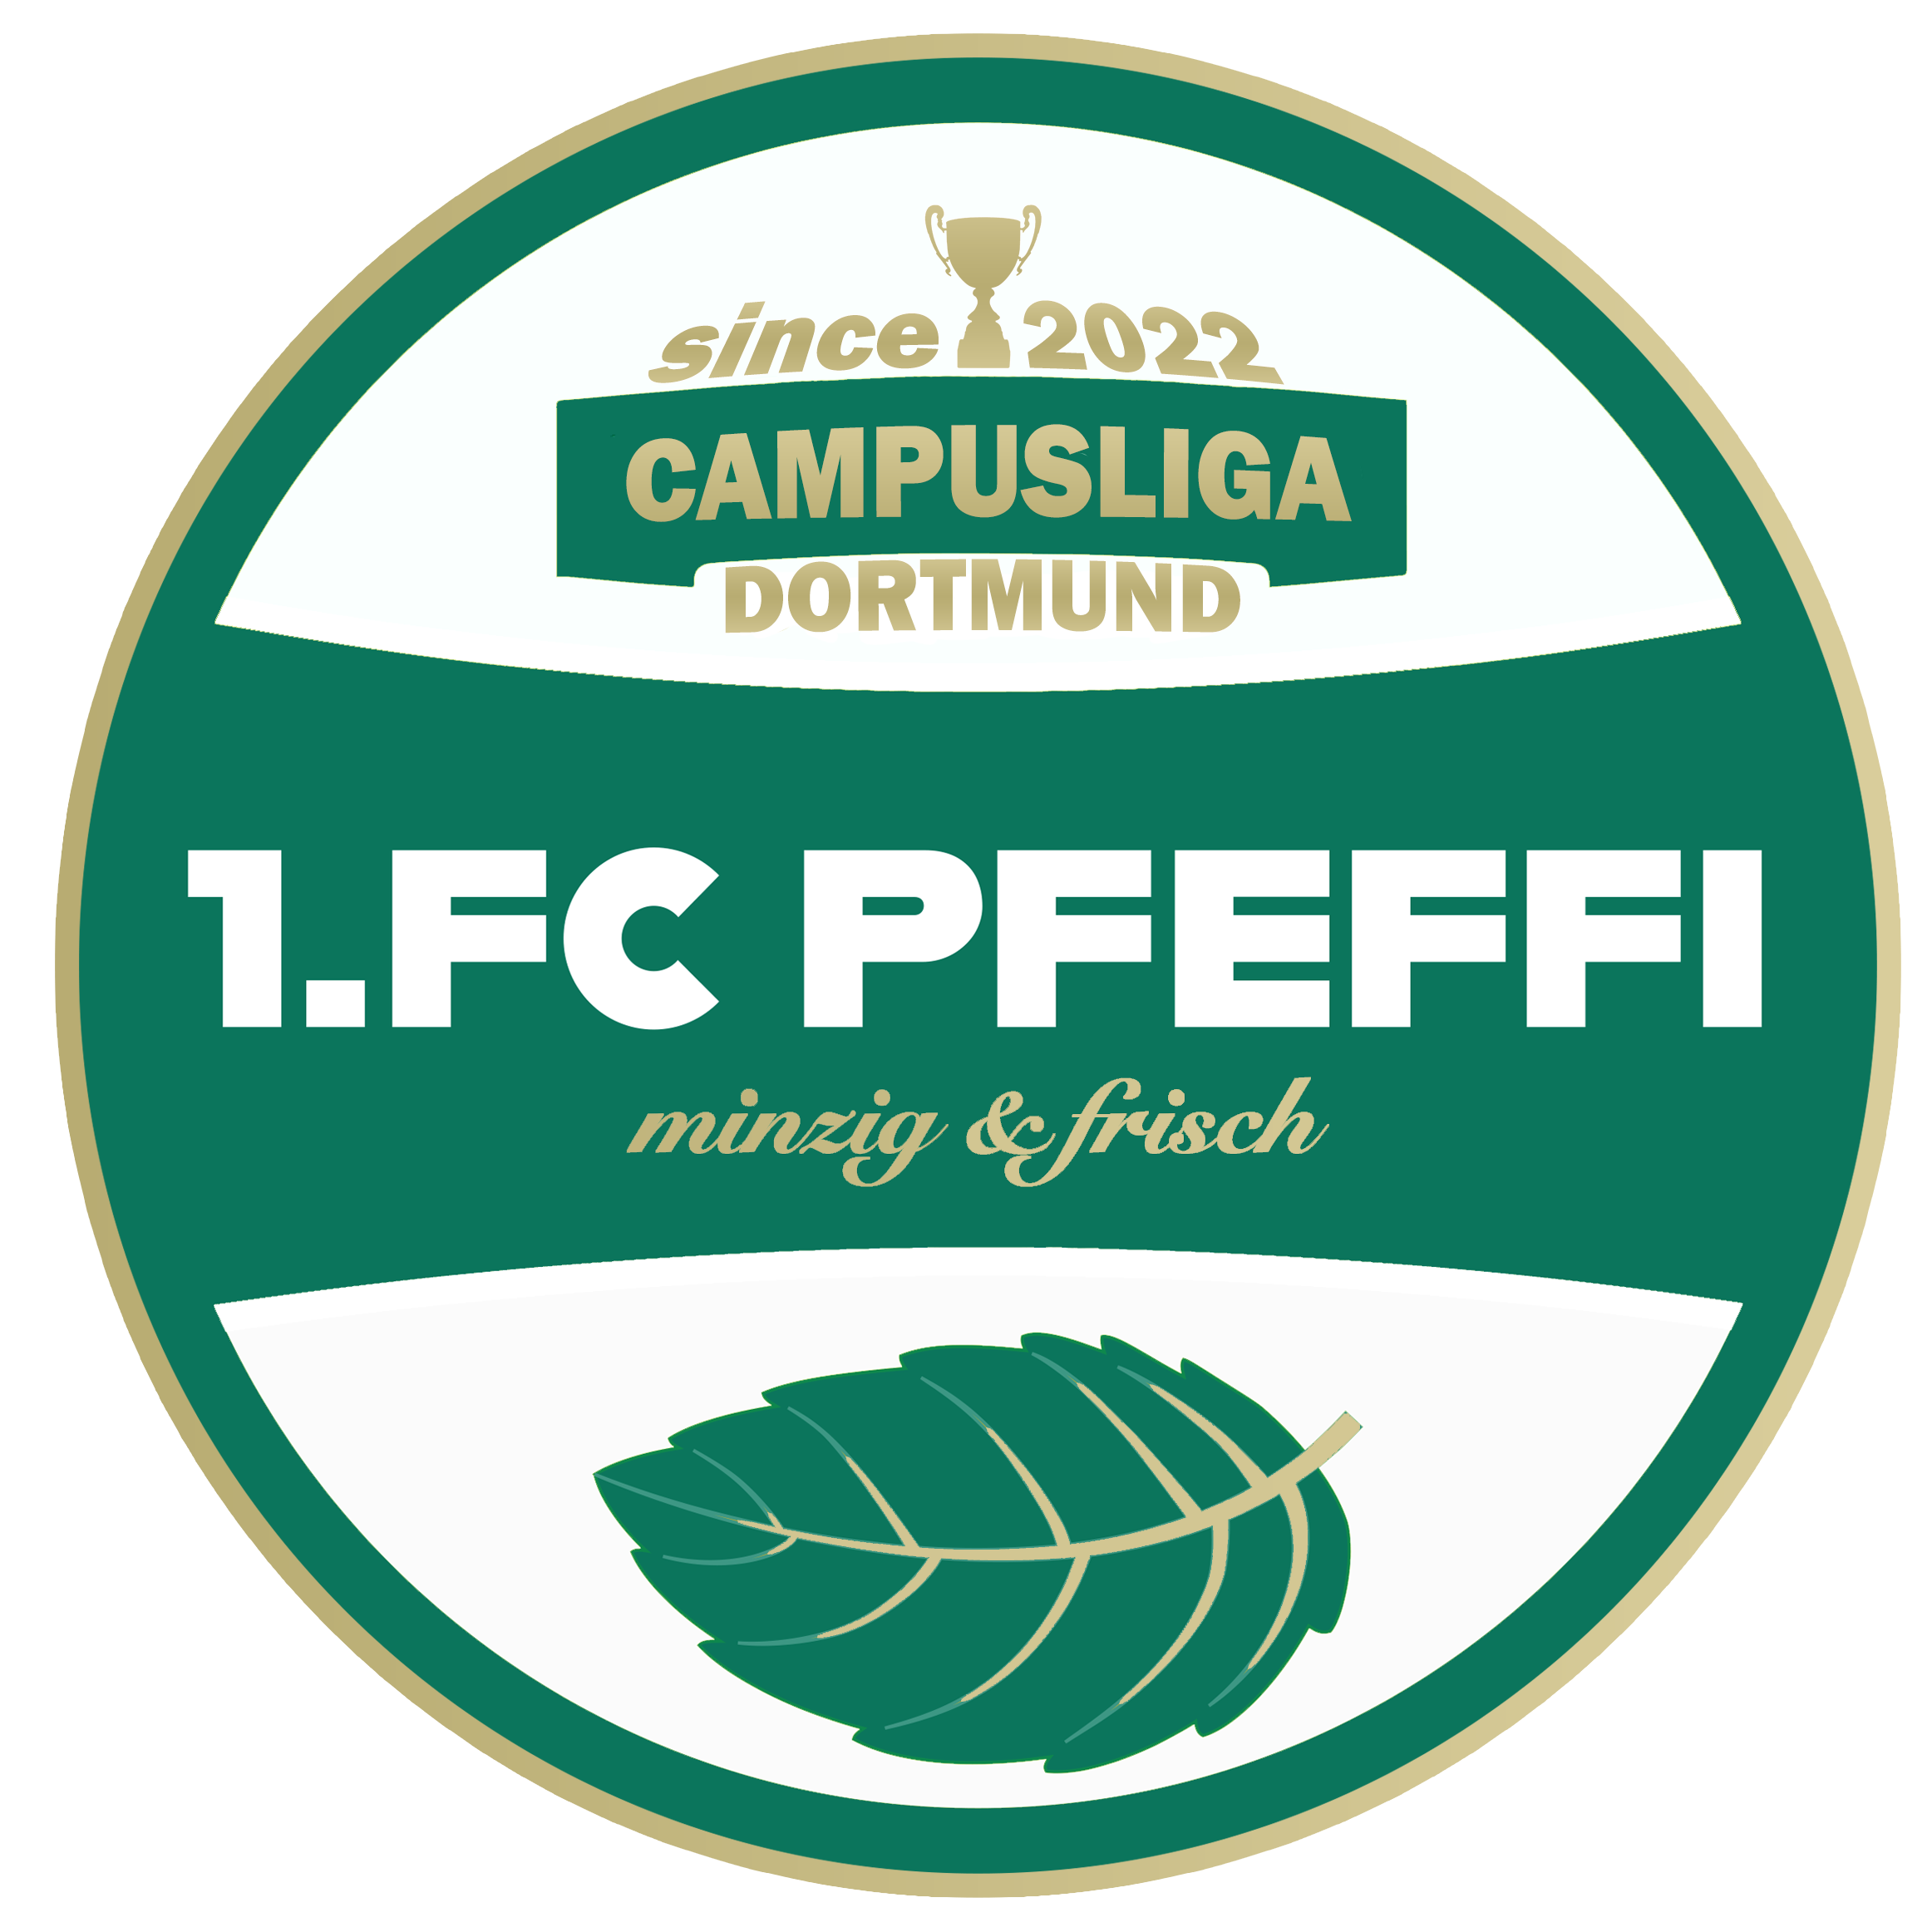 1. FC PFEFFI